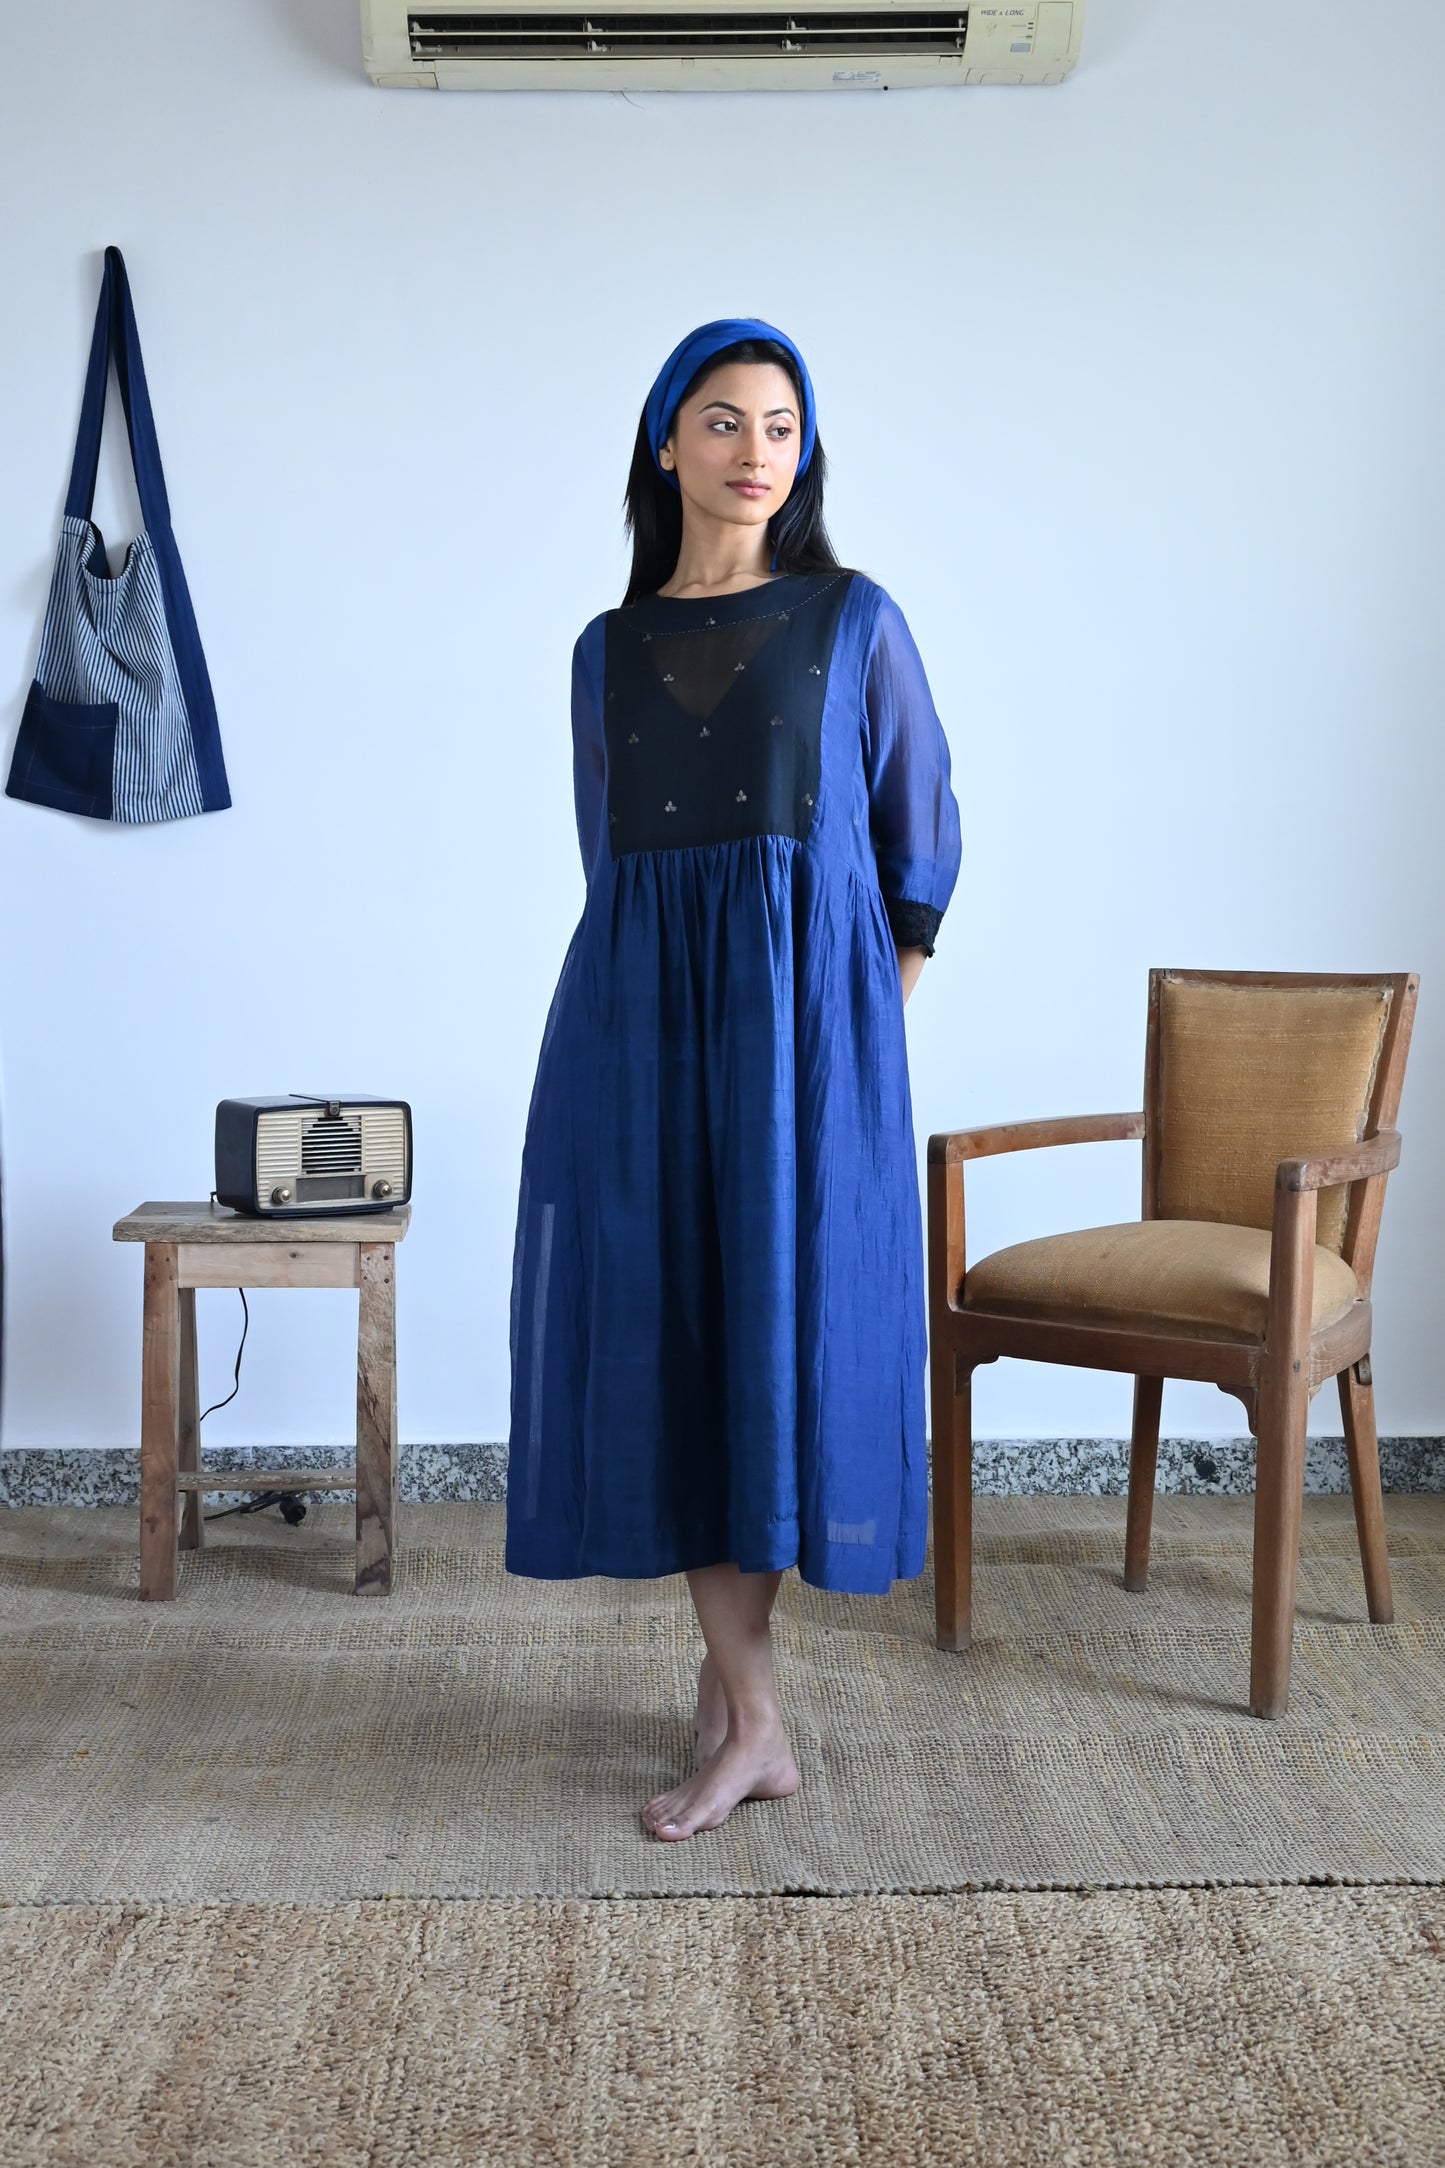 Anna Dress in Blue Chanderi